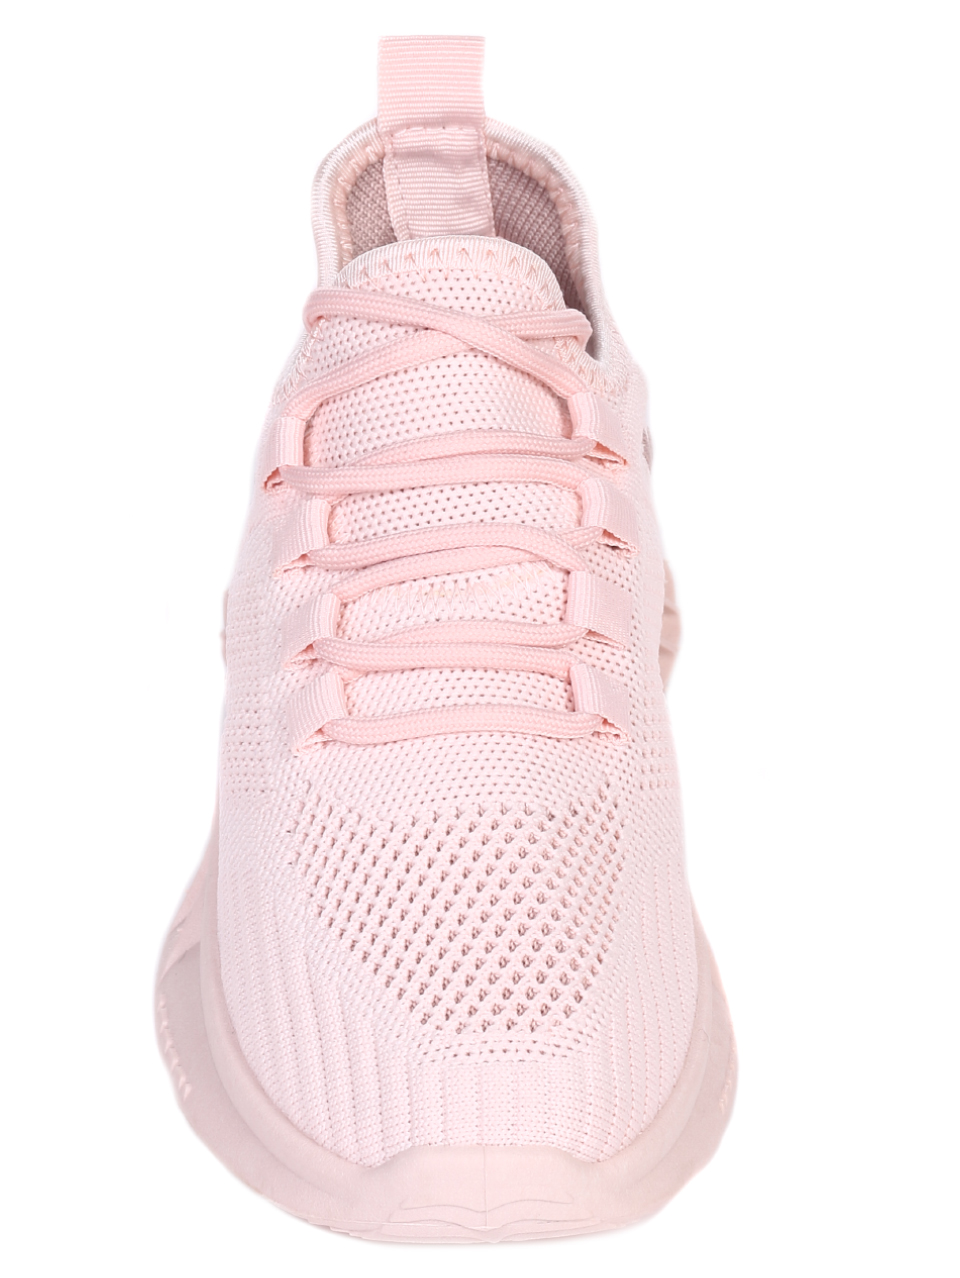 Ежедневни дамски обувки в розово 3U-22029 pink